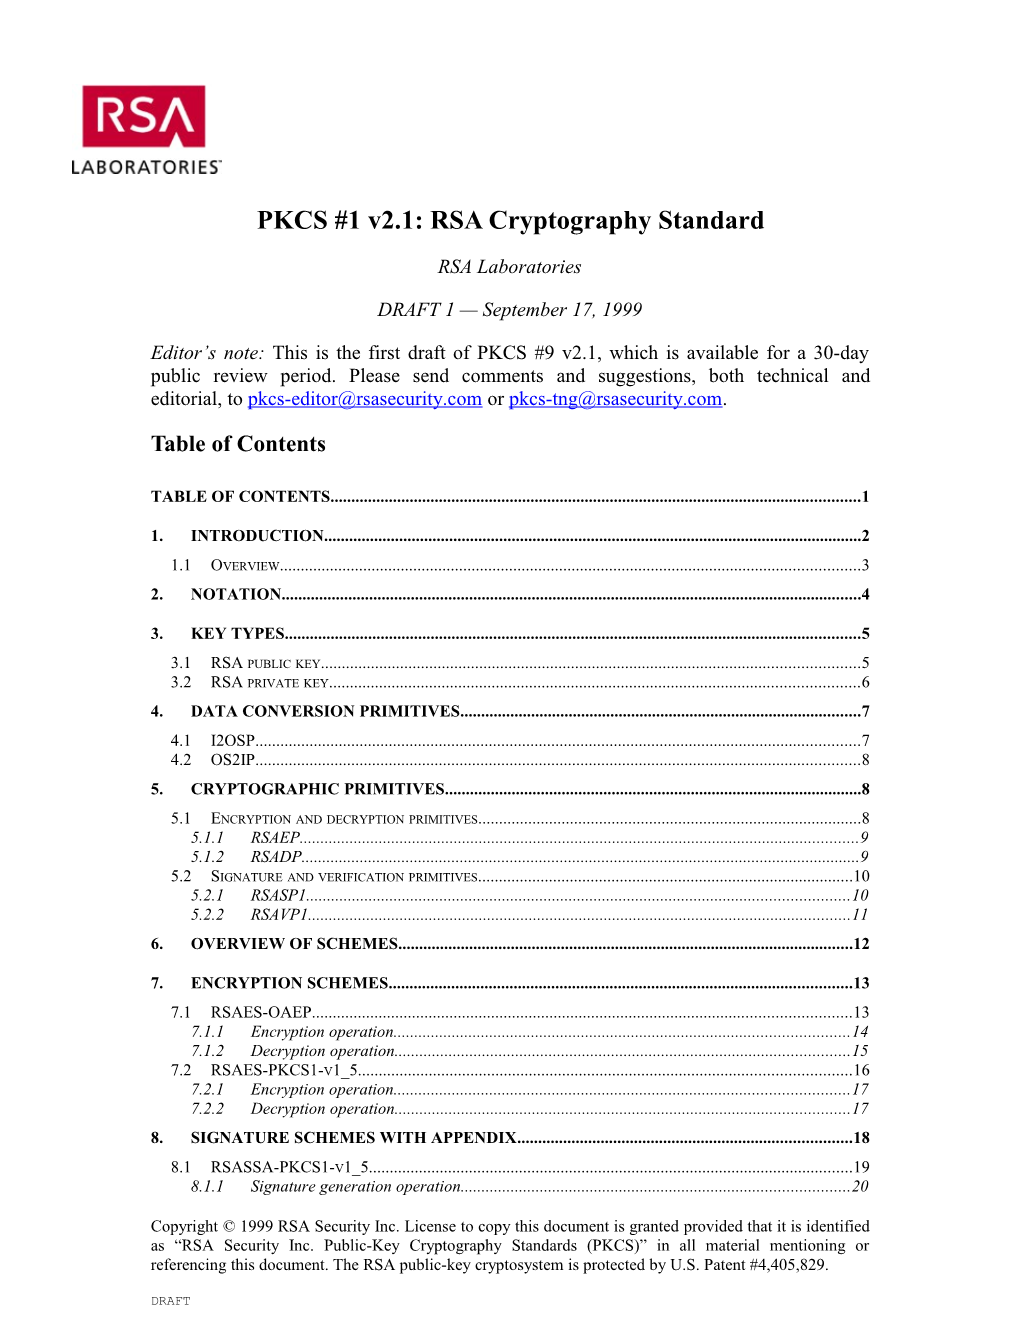 PKCS #1 V2.1: RSA Cryptography Standard